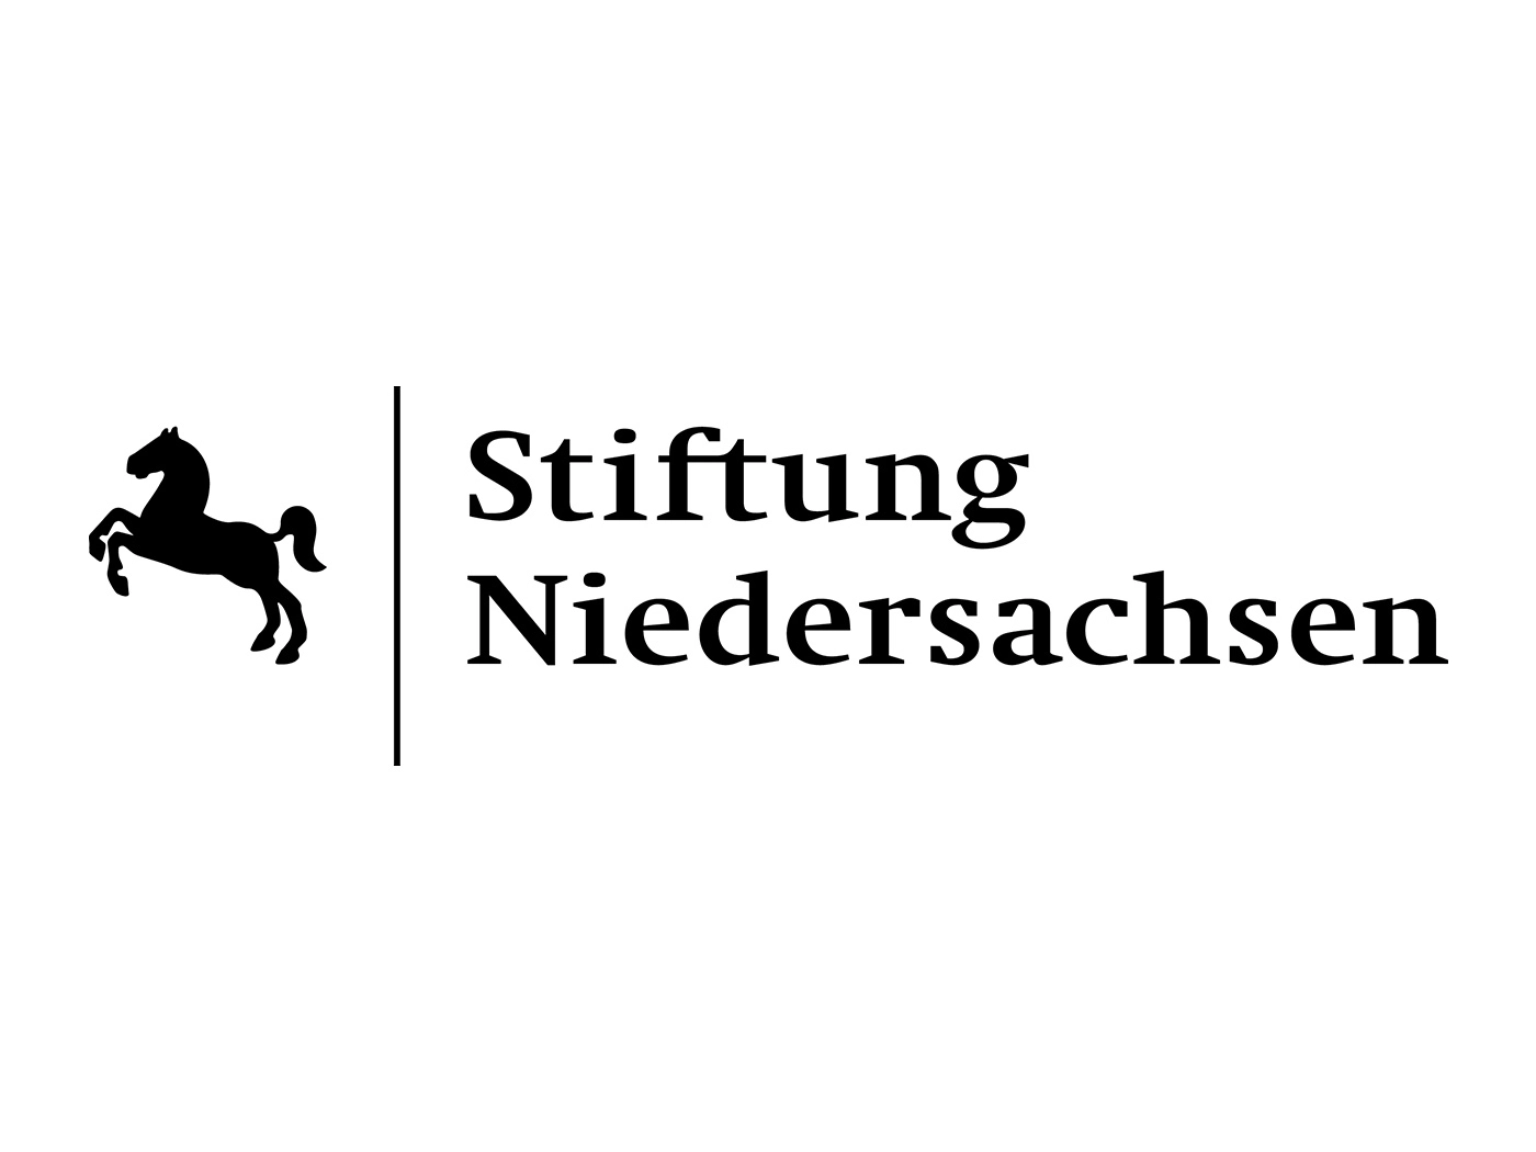 Logo der Stiftung Niedersachsen